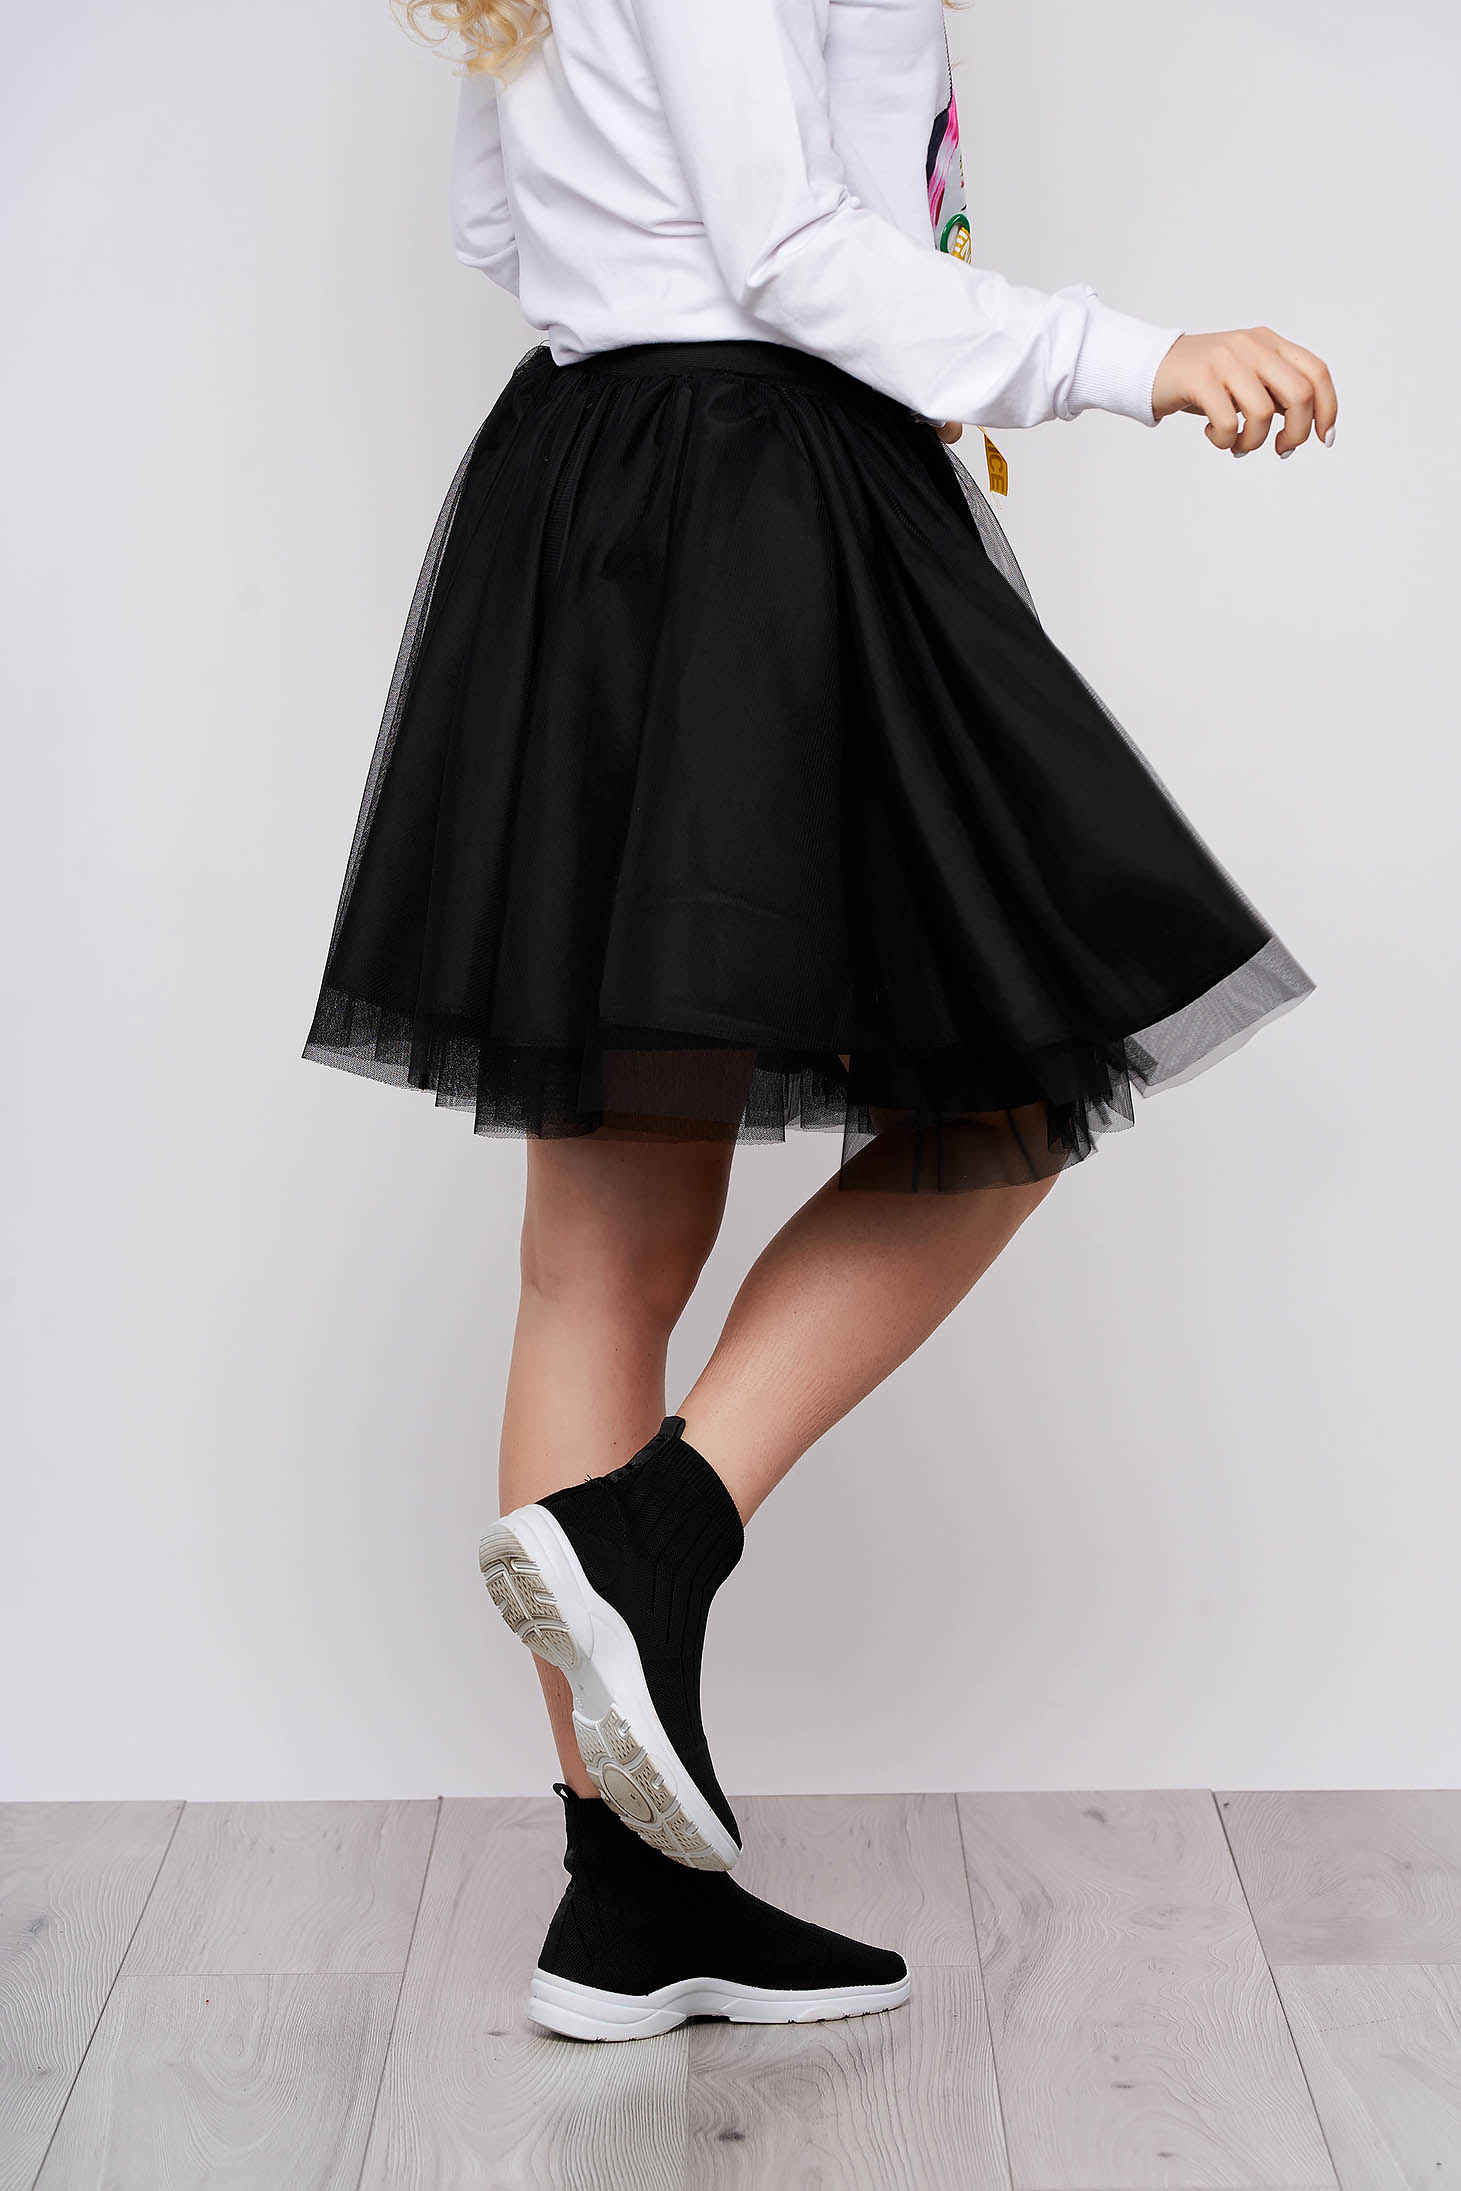 Elegant Black Skirt From Tulle Cloche Short Cut High Waisted 9733